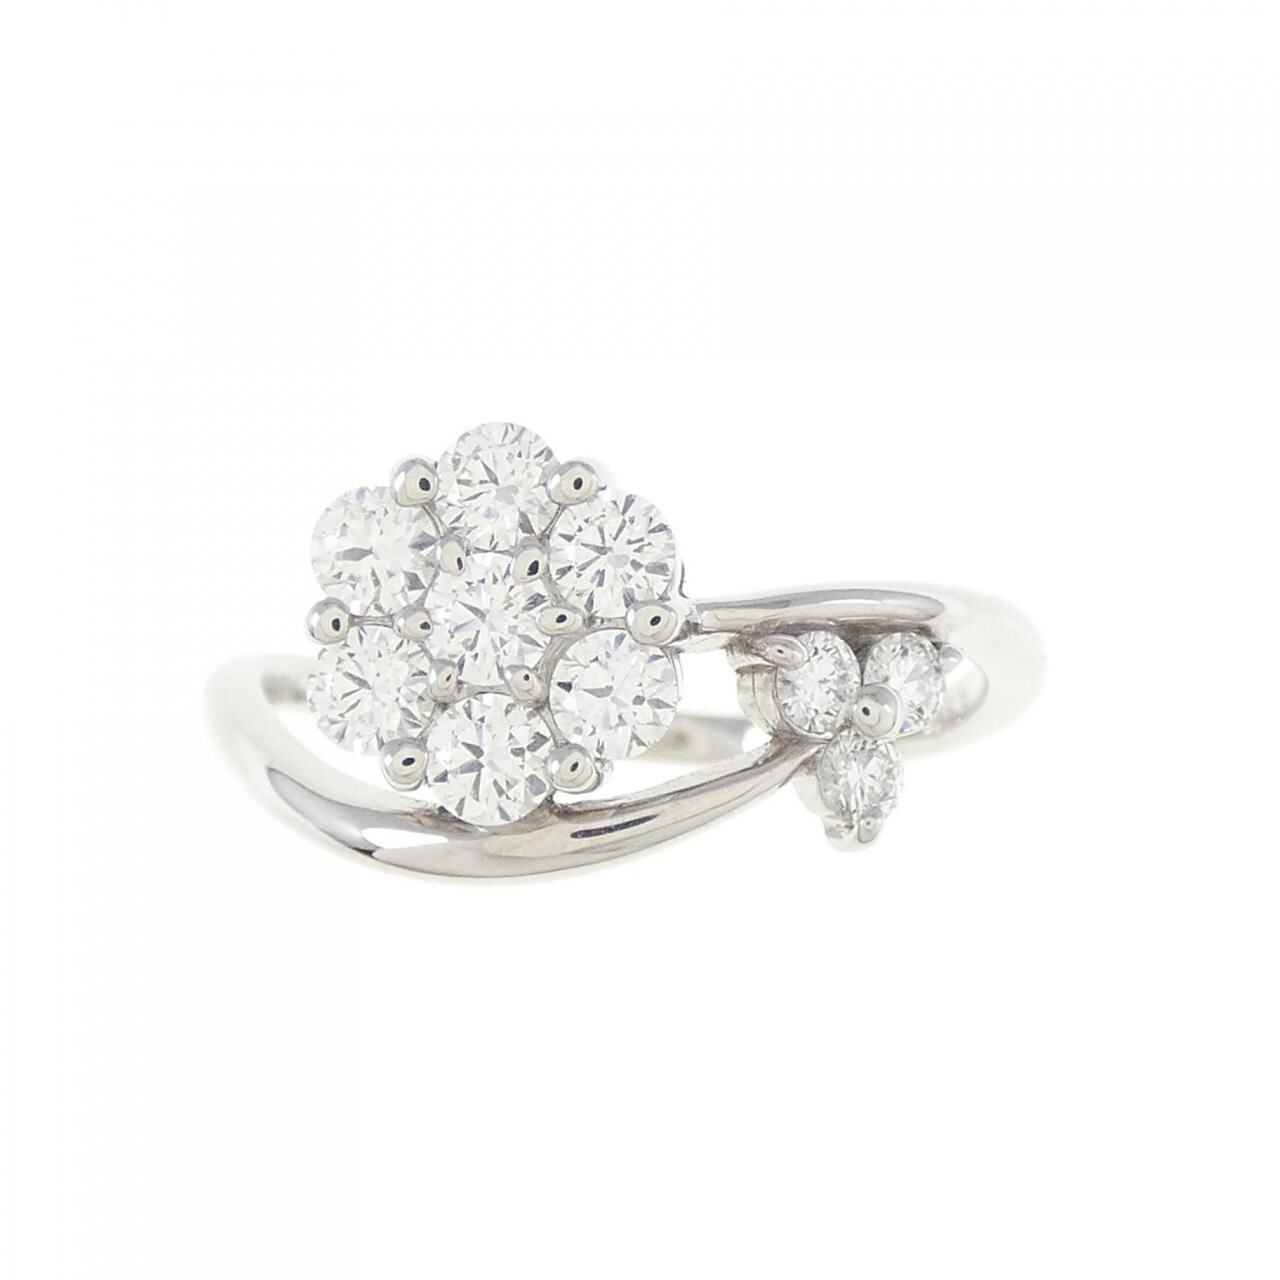 K18WG flower Diamond ring 0.53CT